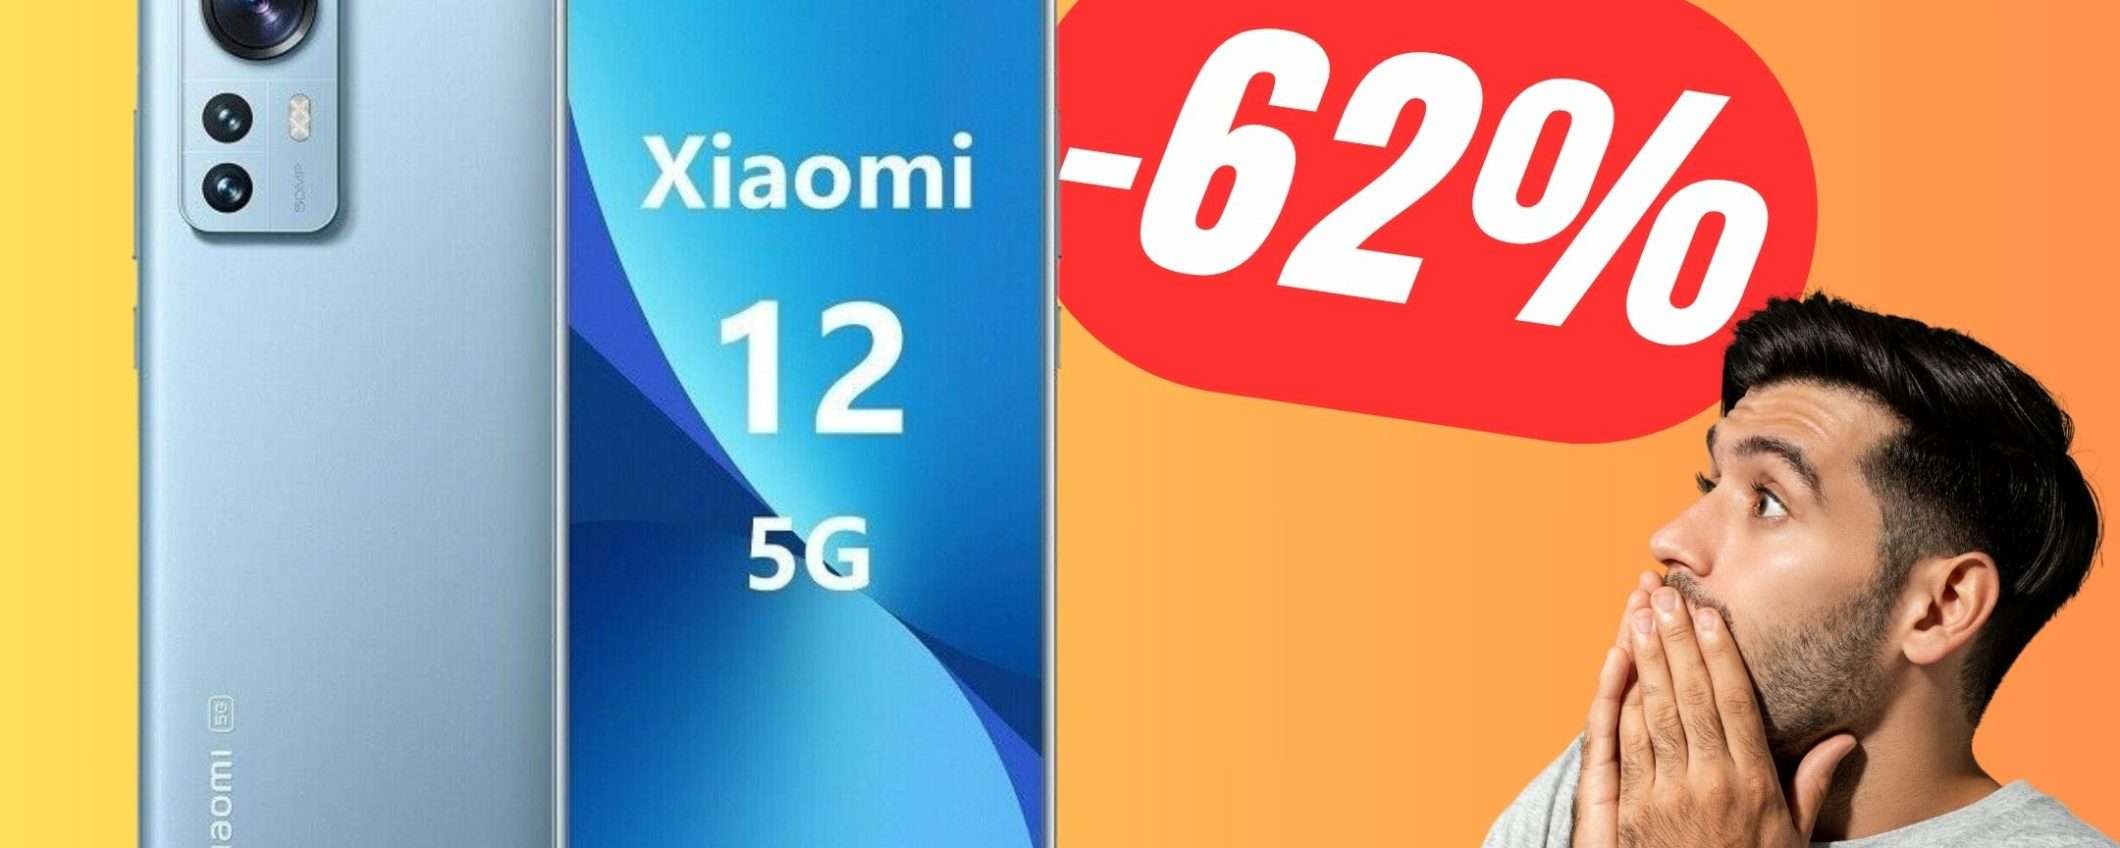 SCONTO FOLLE PER Xiaomi 12: risparmierai il 62%!